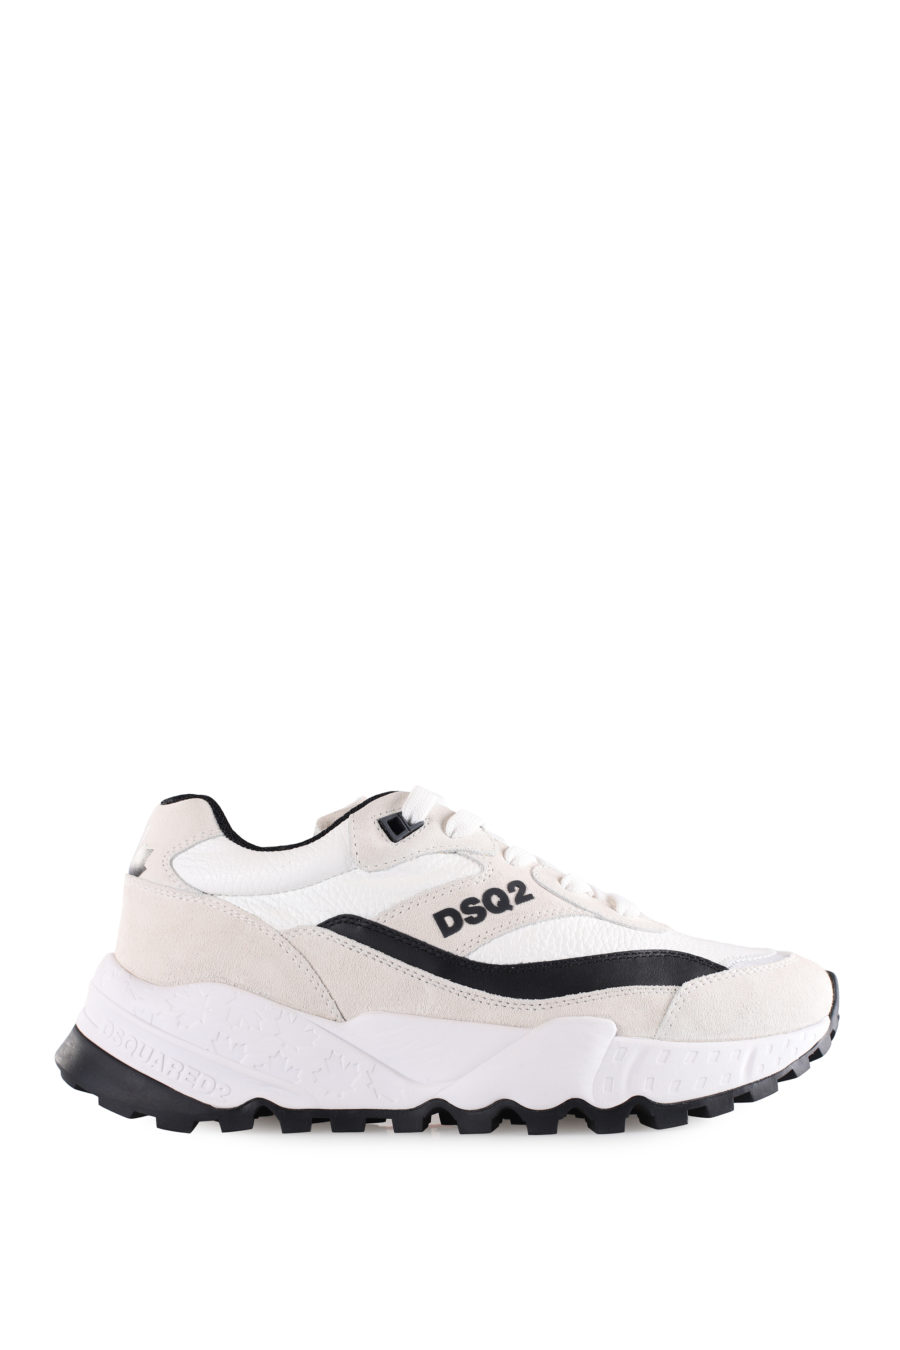 Zapatillas blancas con logo "Dsq2" y detalles negros - IMG 9498